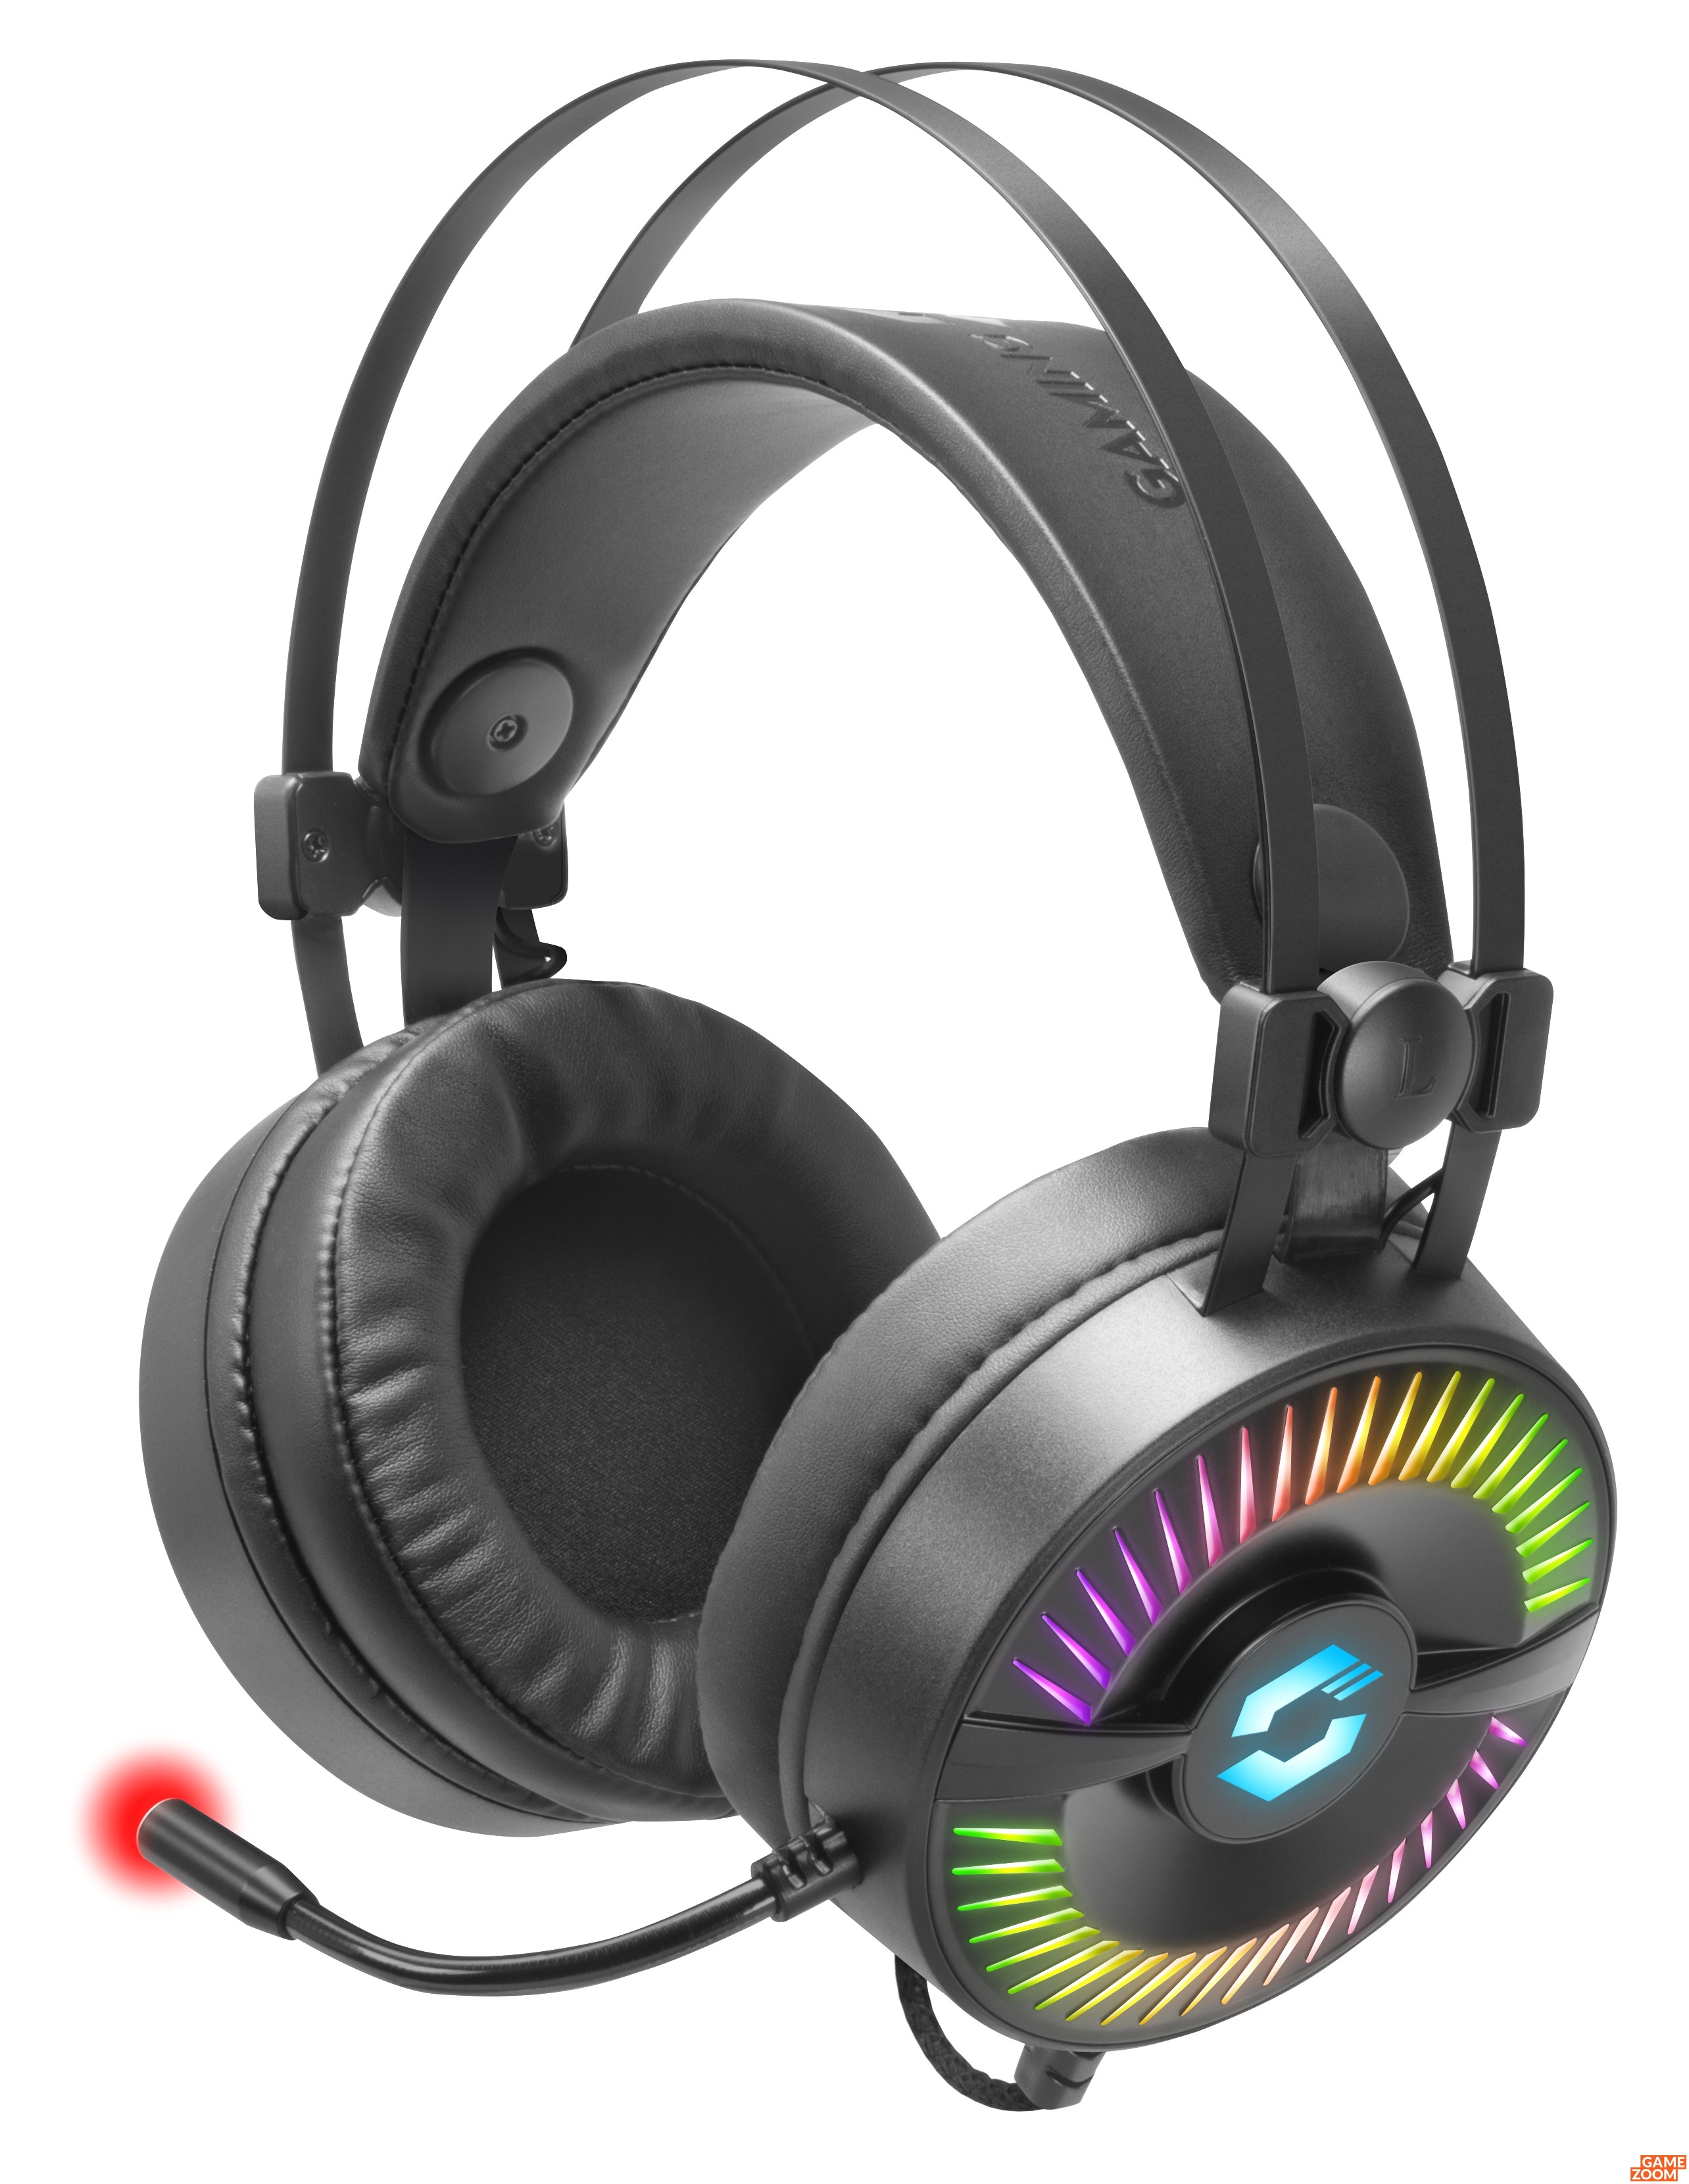 Speedlink: Gaming-Headset mit spektakulärer RGB-Beleuchtung Vibrationen und